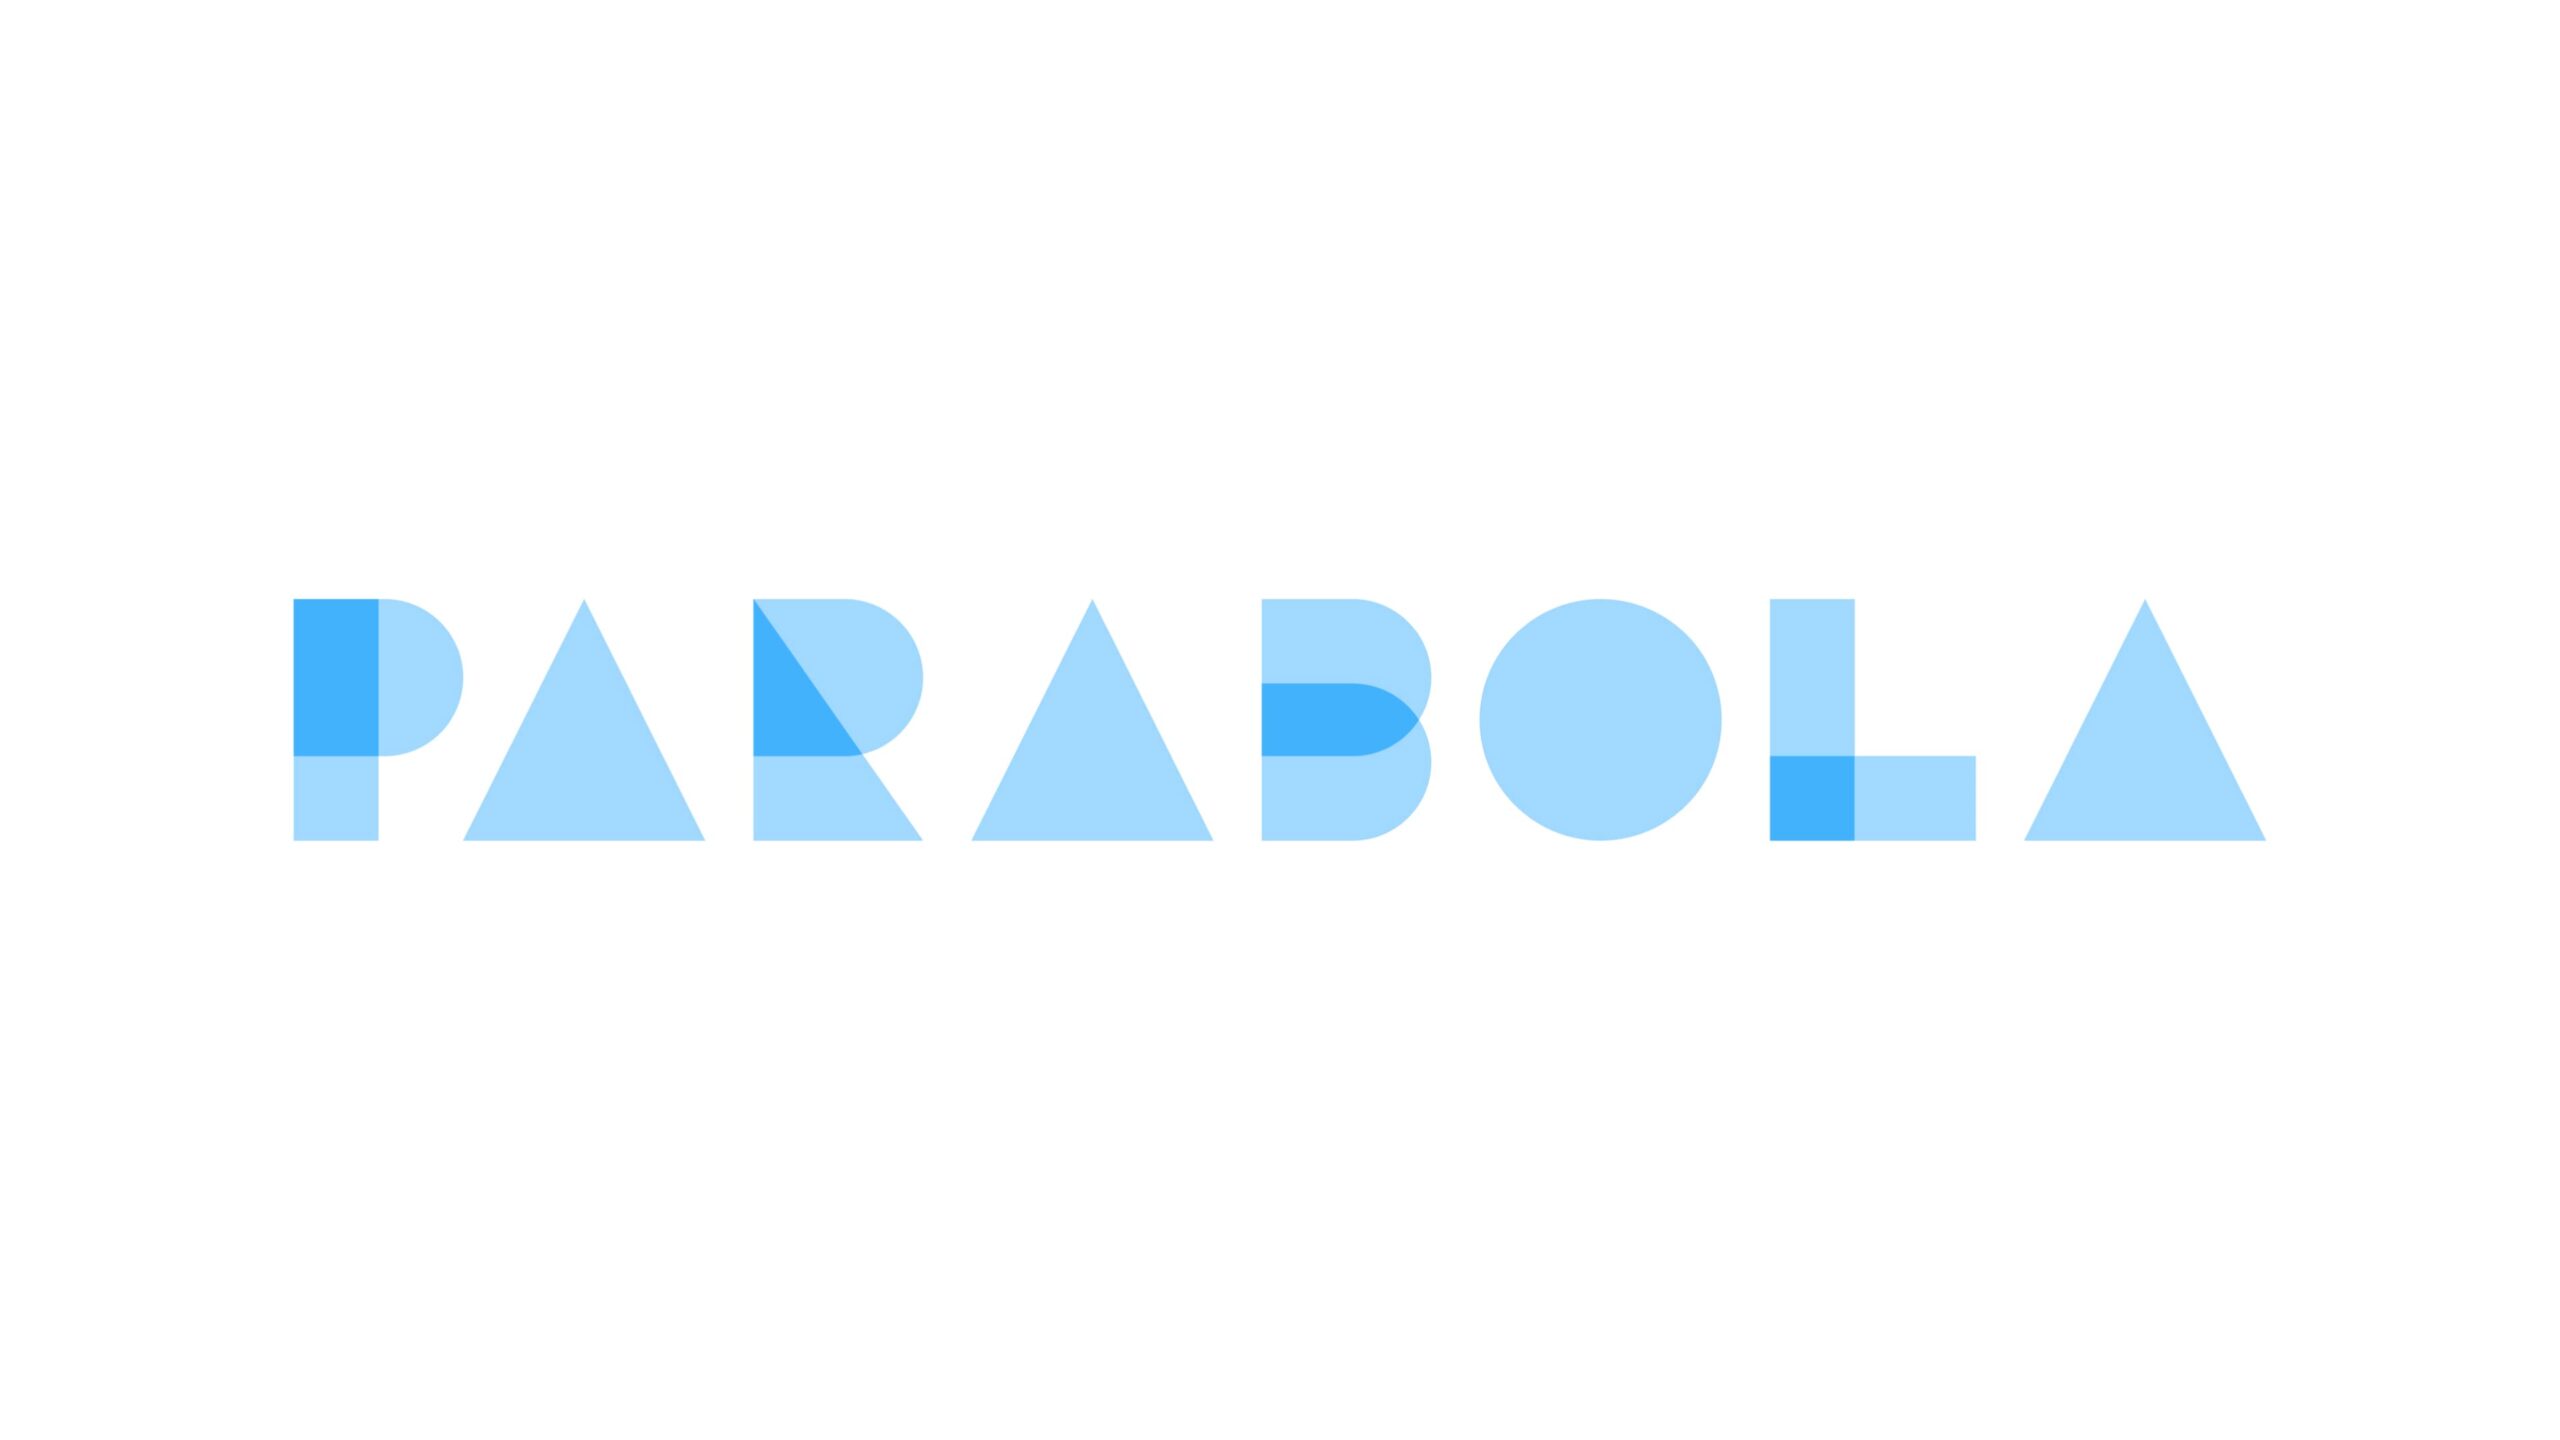 業務自動化スタートアップのParabolaがシリーズBで2,400万ドルを調達——累積調達額は3,420万ドルに